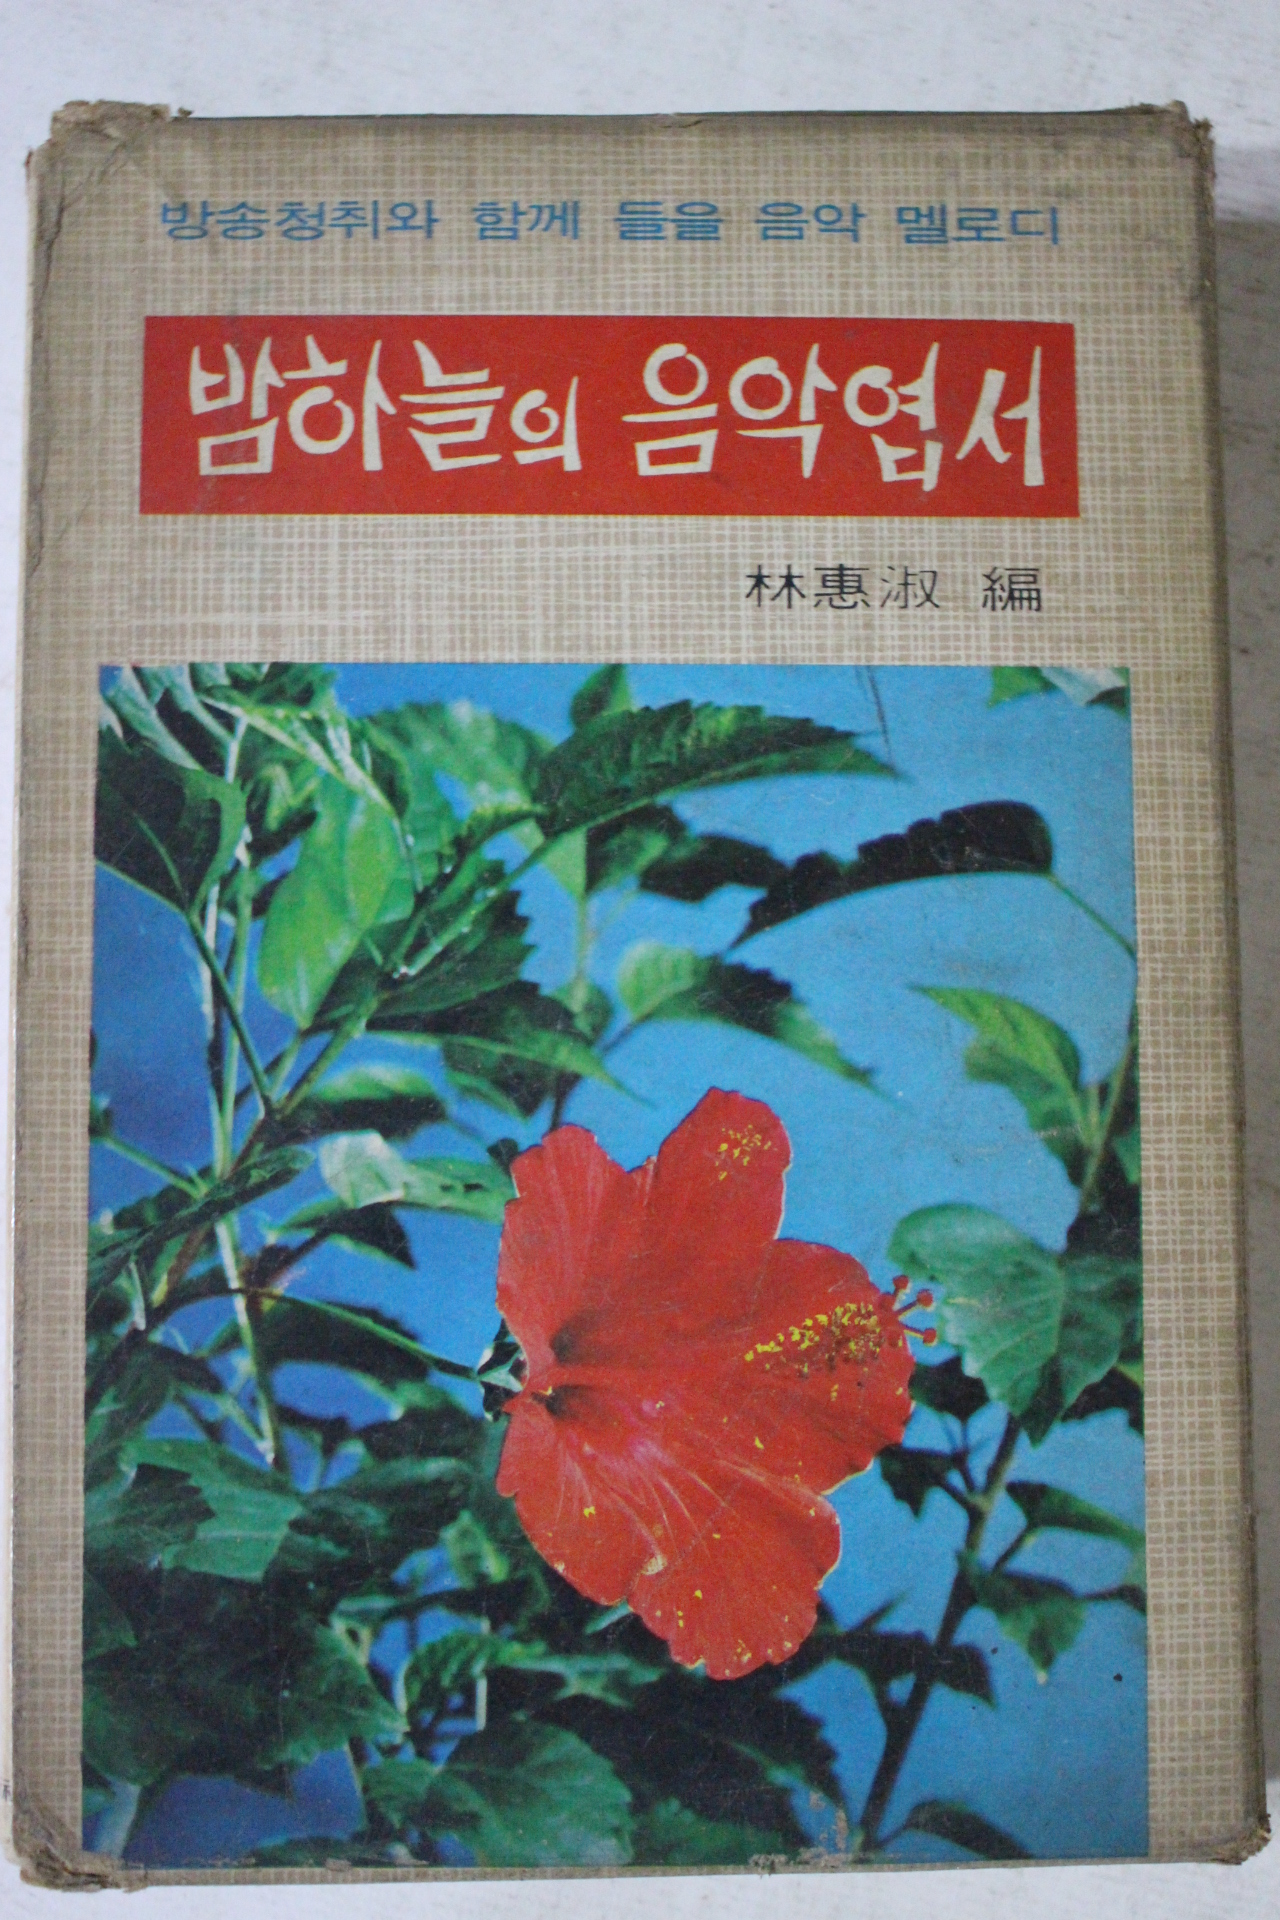 1974년 소월시집,밤하늘의 음악엽서 2책